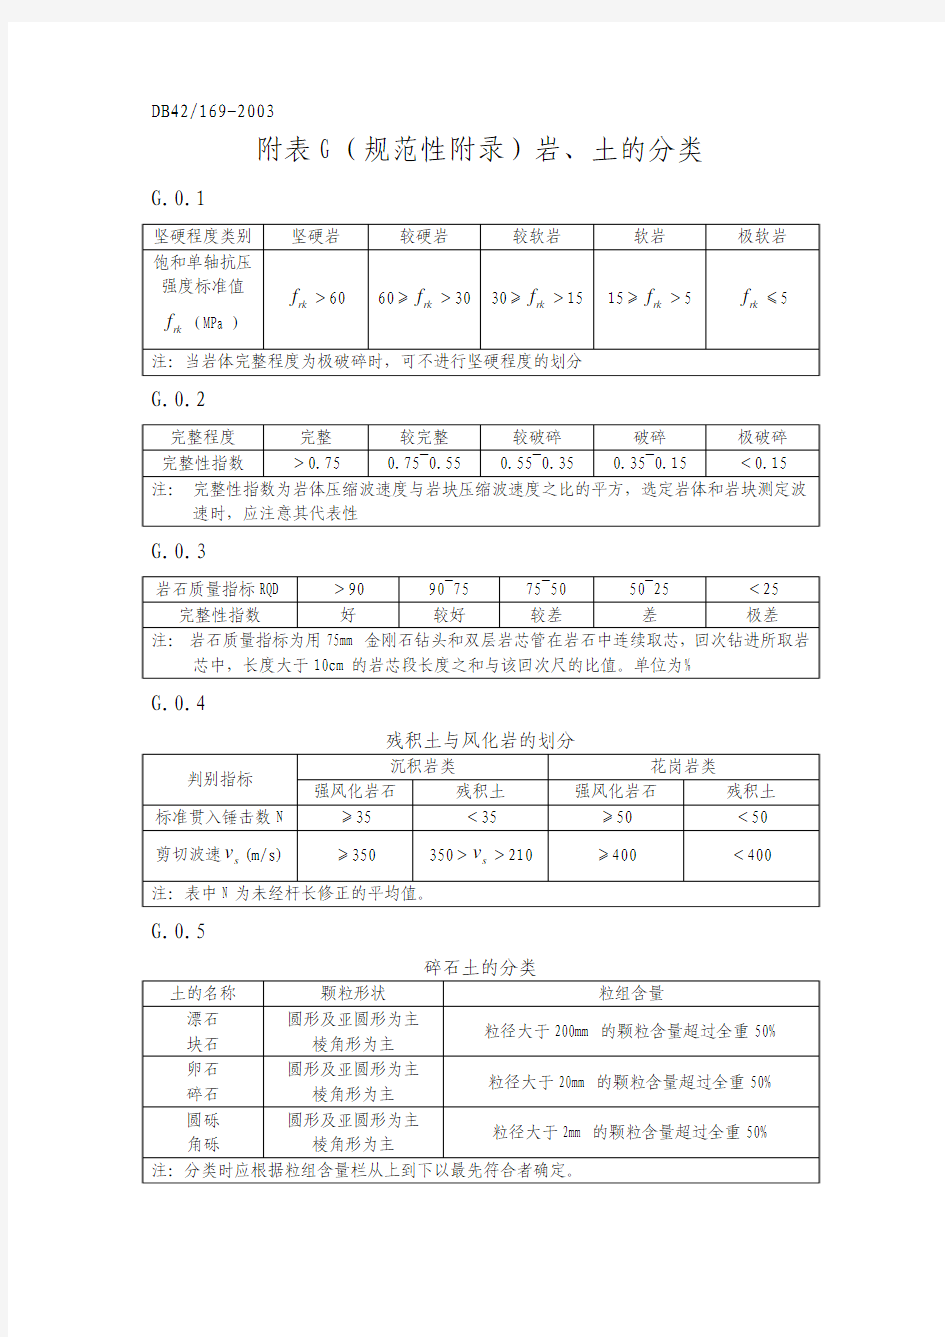 湖北省地方标准岩土规范汇总表